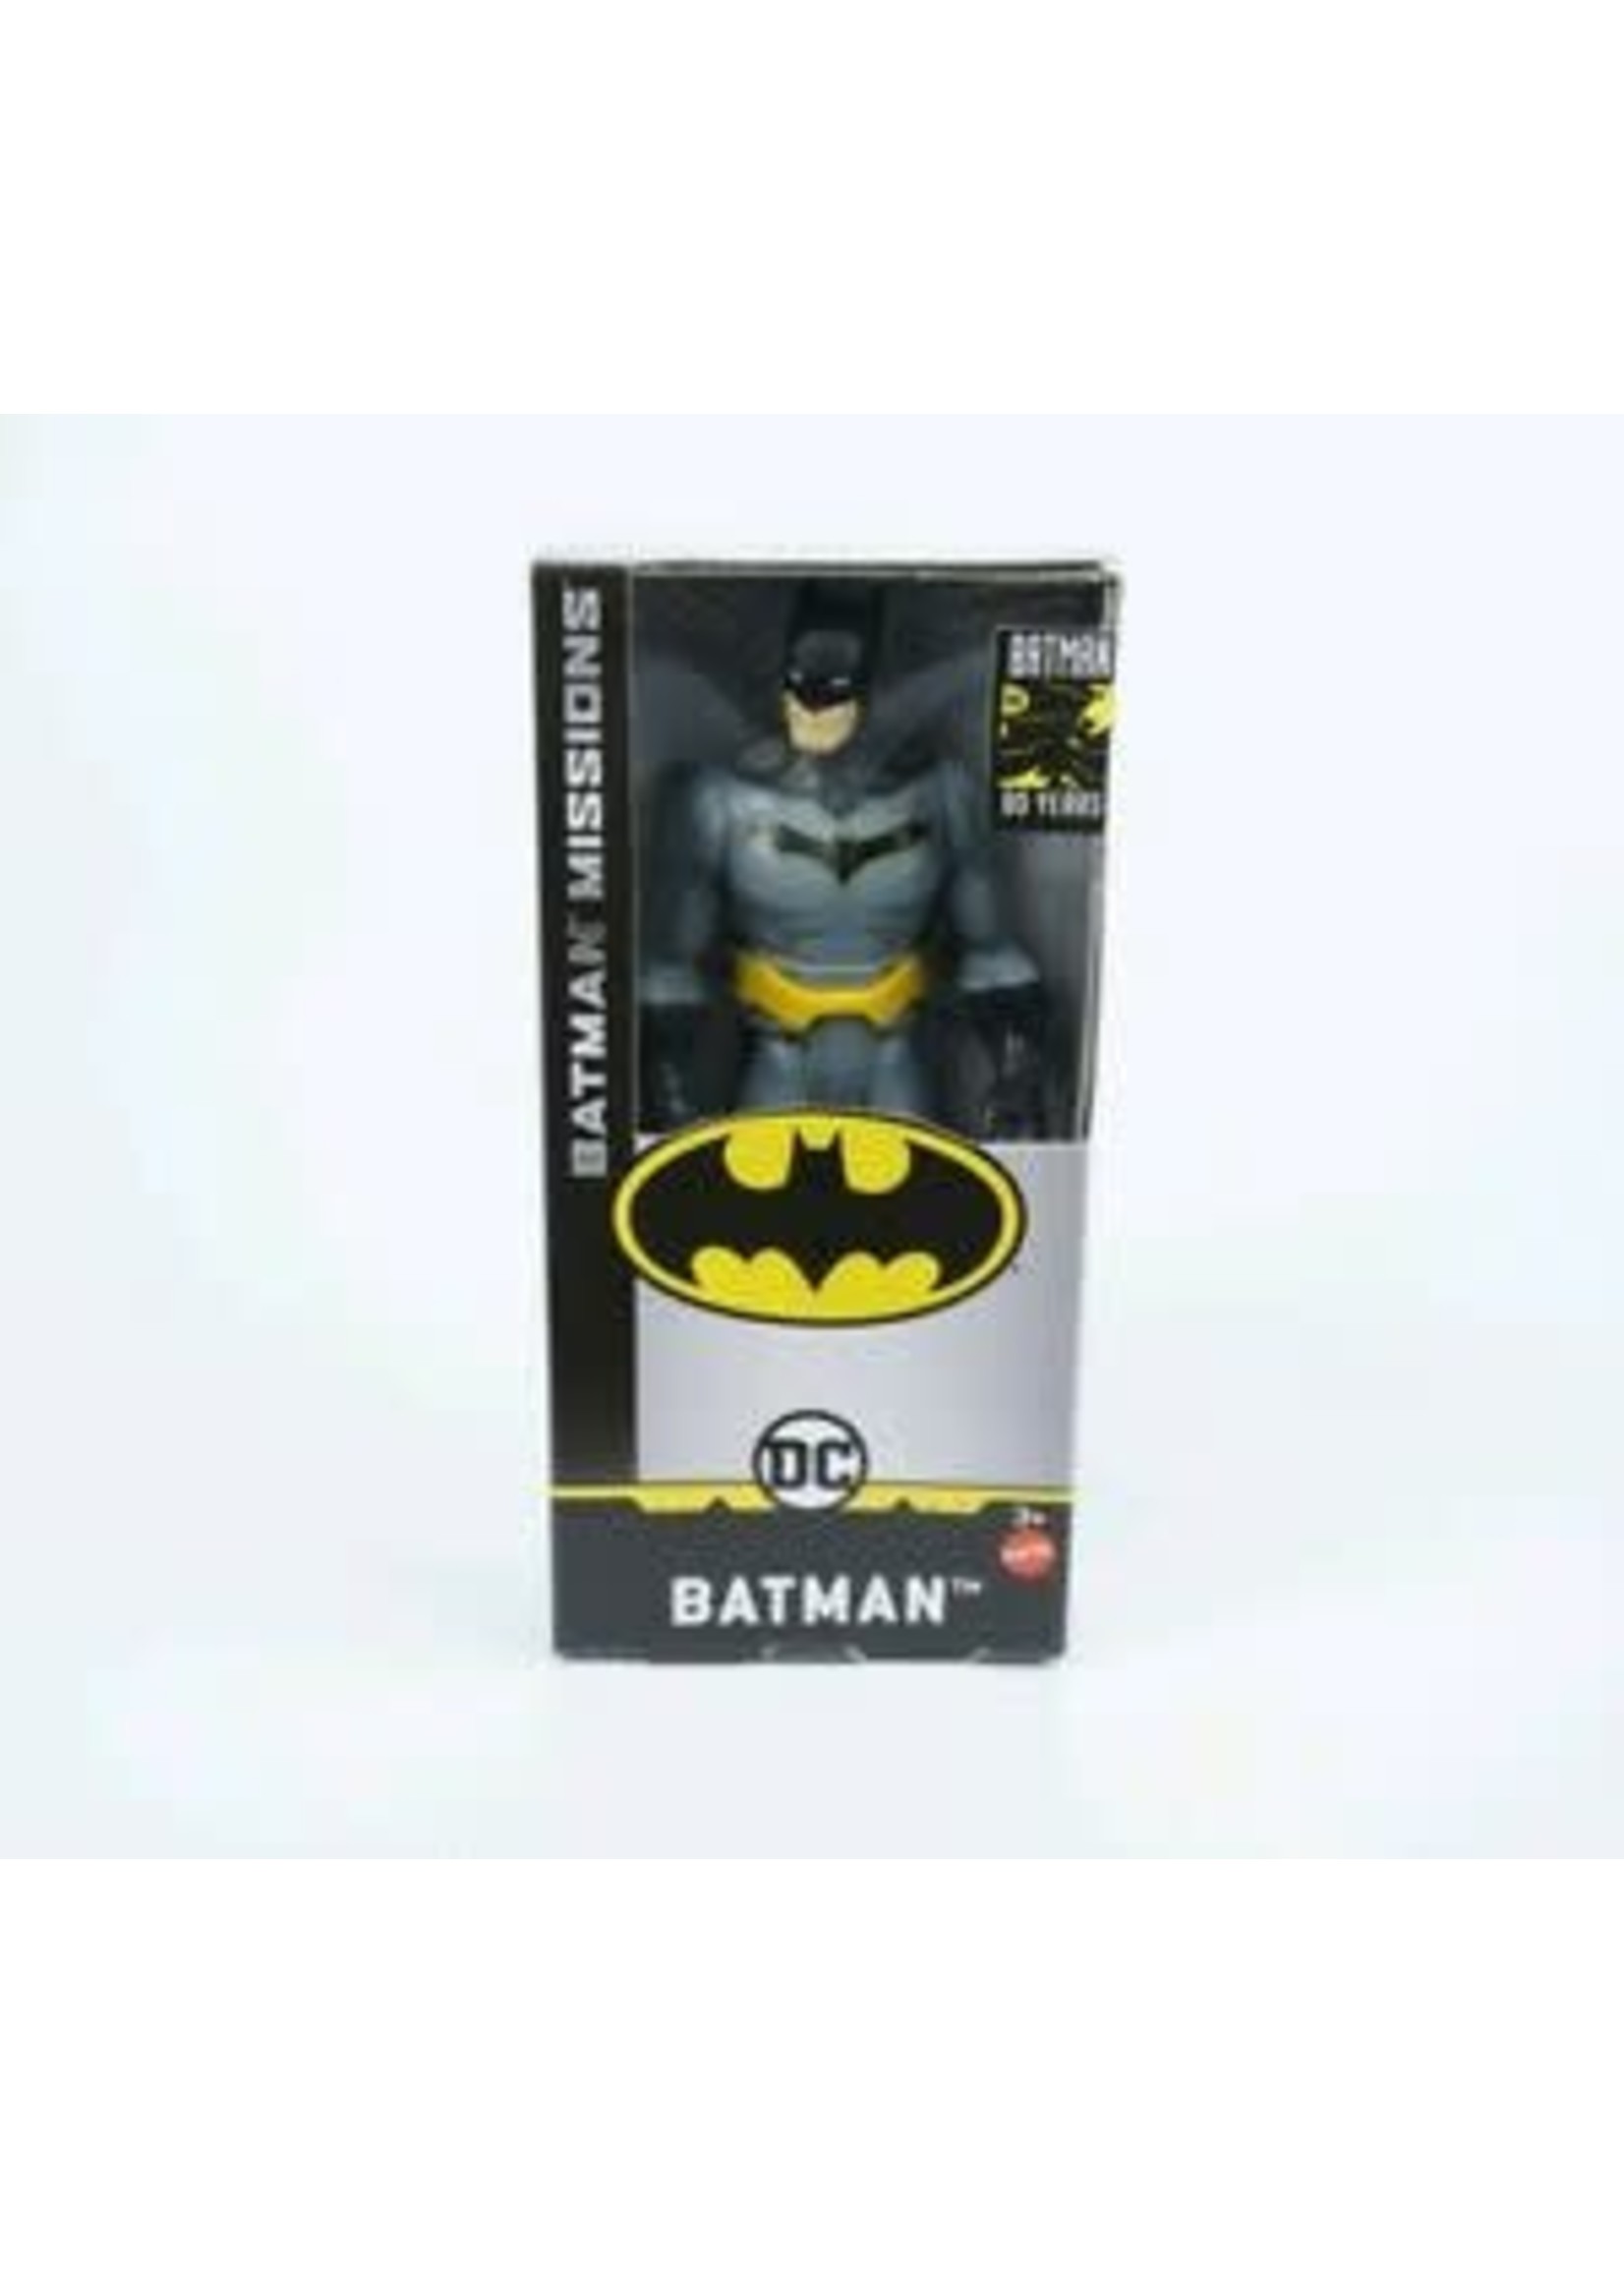 Mattel Batman Mission - Batman